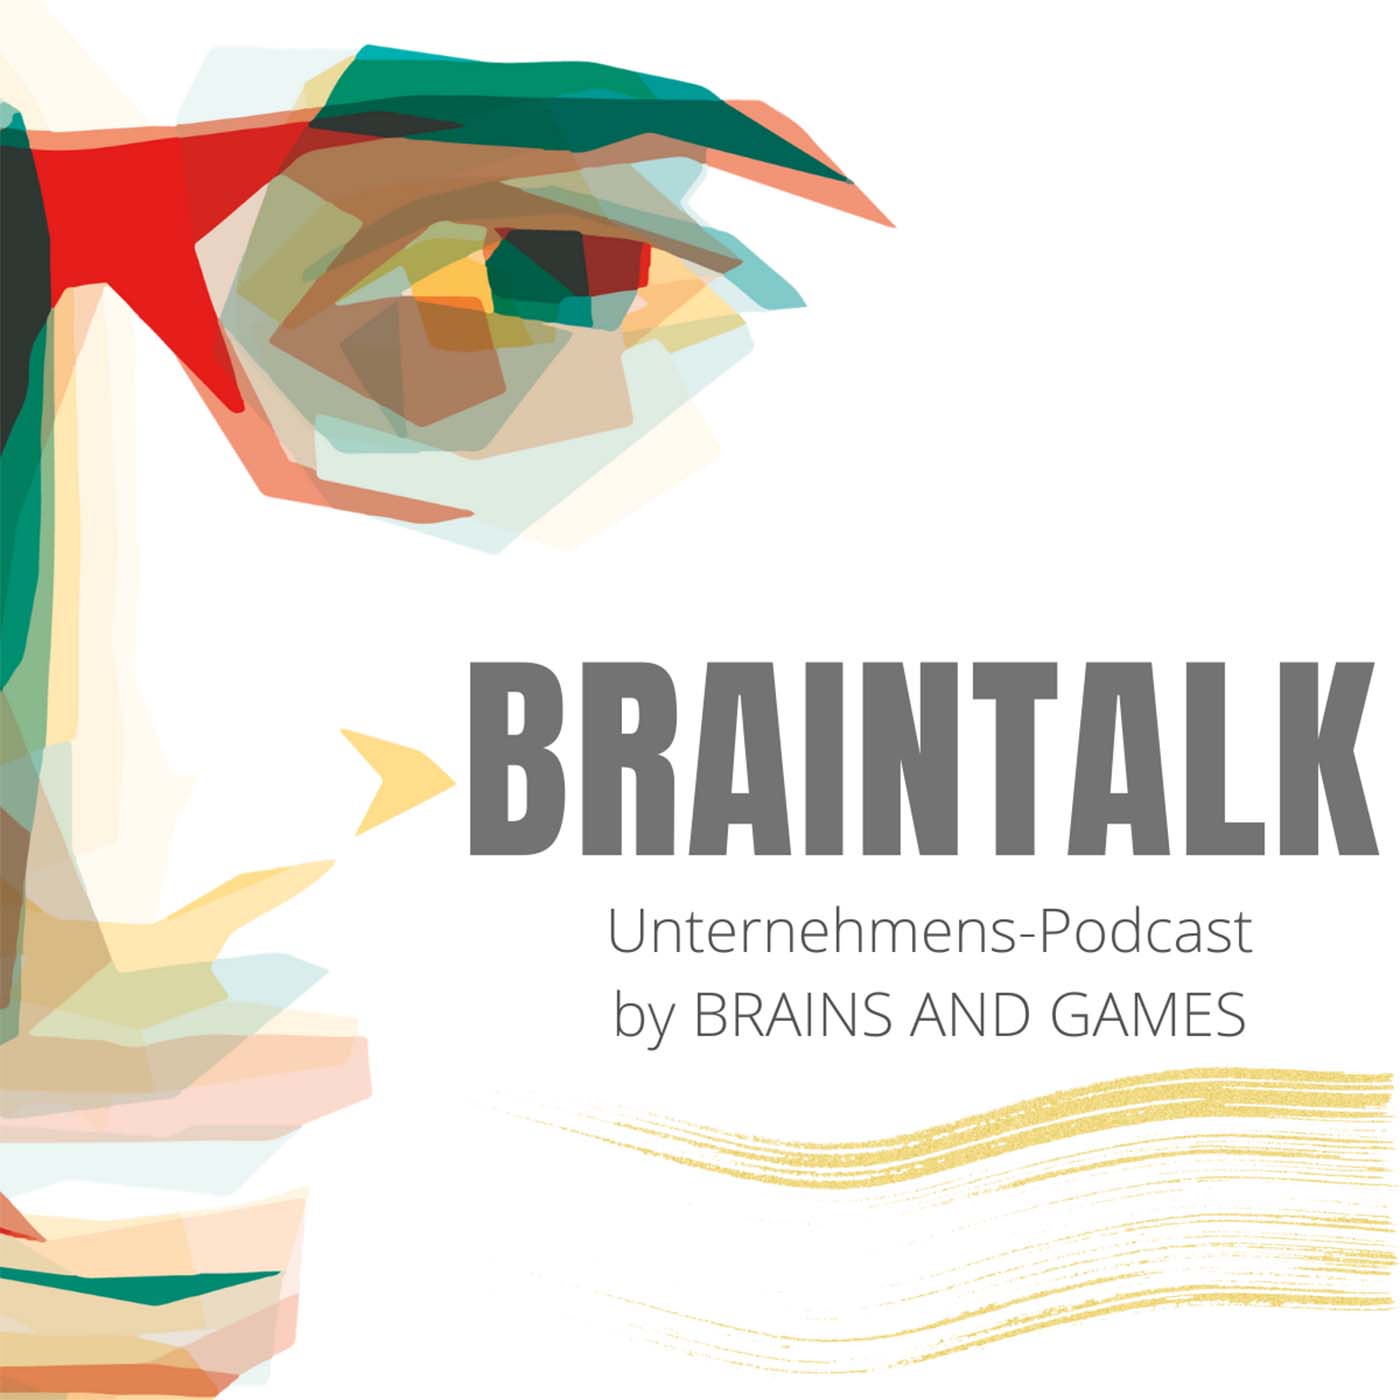 Braintalk Episode 1